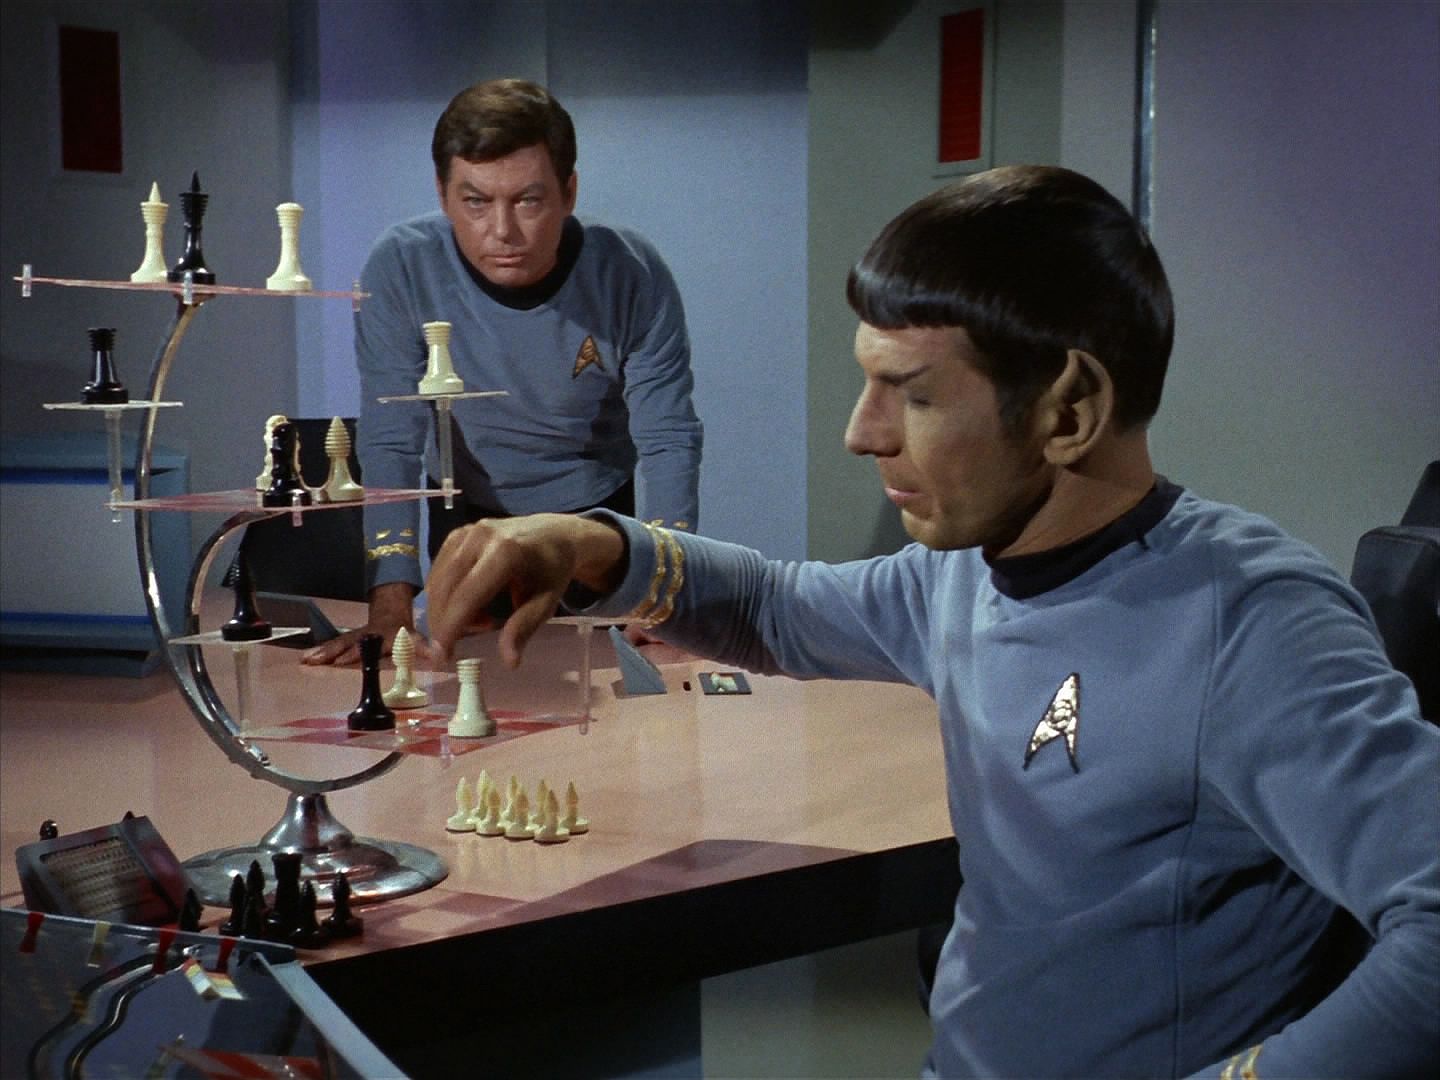 Doktor je bez sebe, když vidí Spocka hrát šachy. Ten si ale uvědomil, že s počítačem musel někdo manipulovat. Vyhrál proti počítači pět partií za sebou, což je naprosto nemožné.